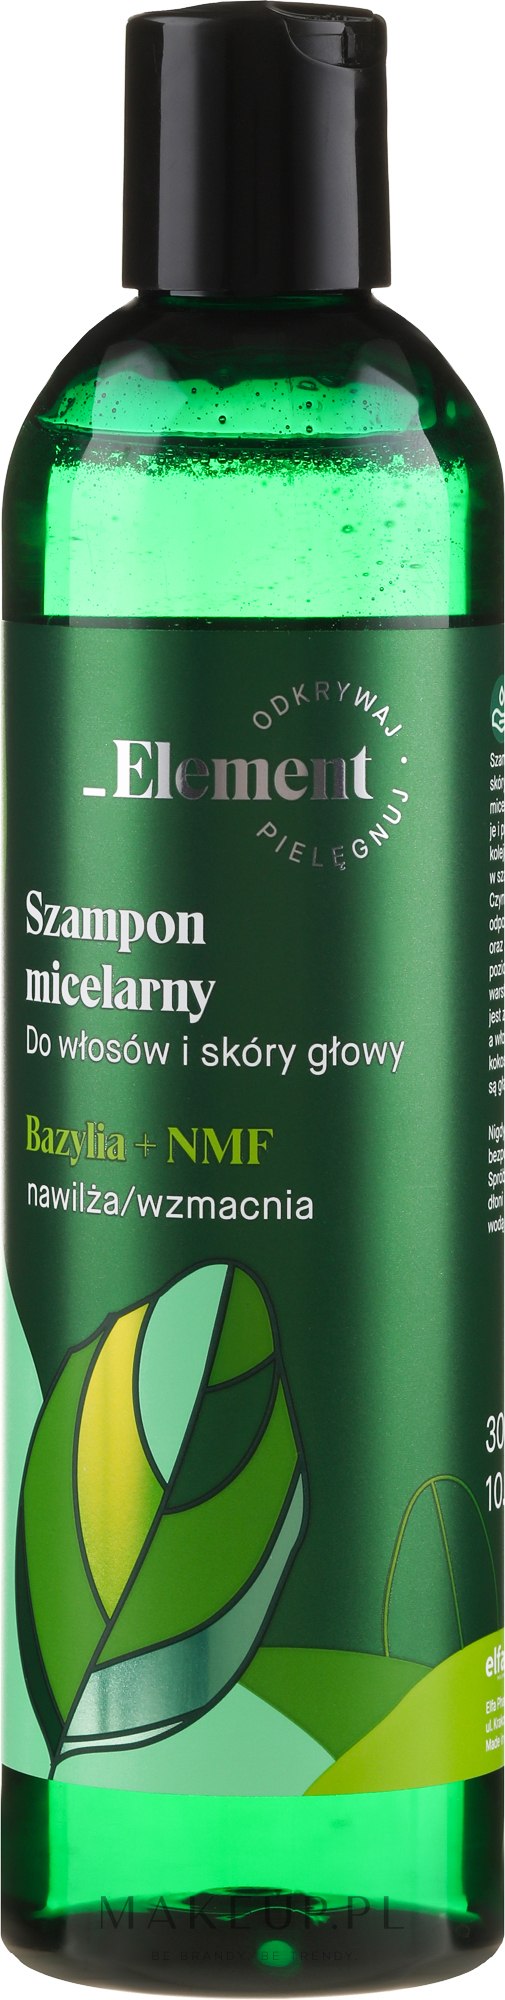 element szampon micelarny bazylia opinie